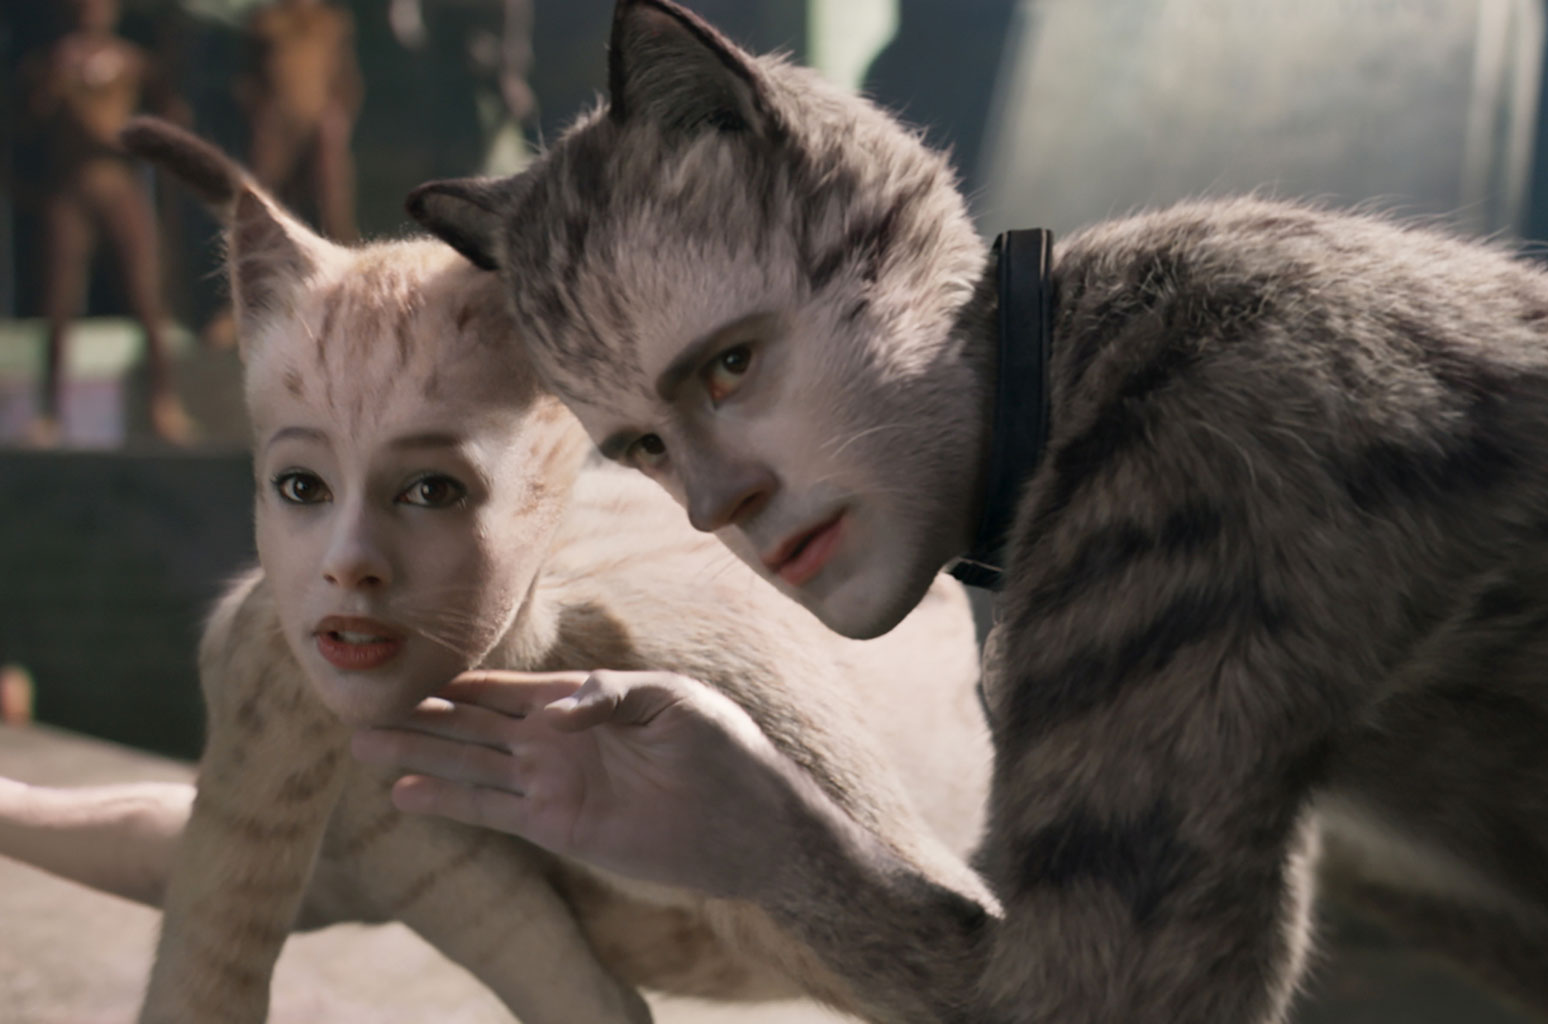 cats-movie-still-2019-billboard-1548